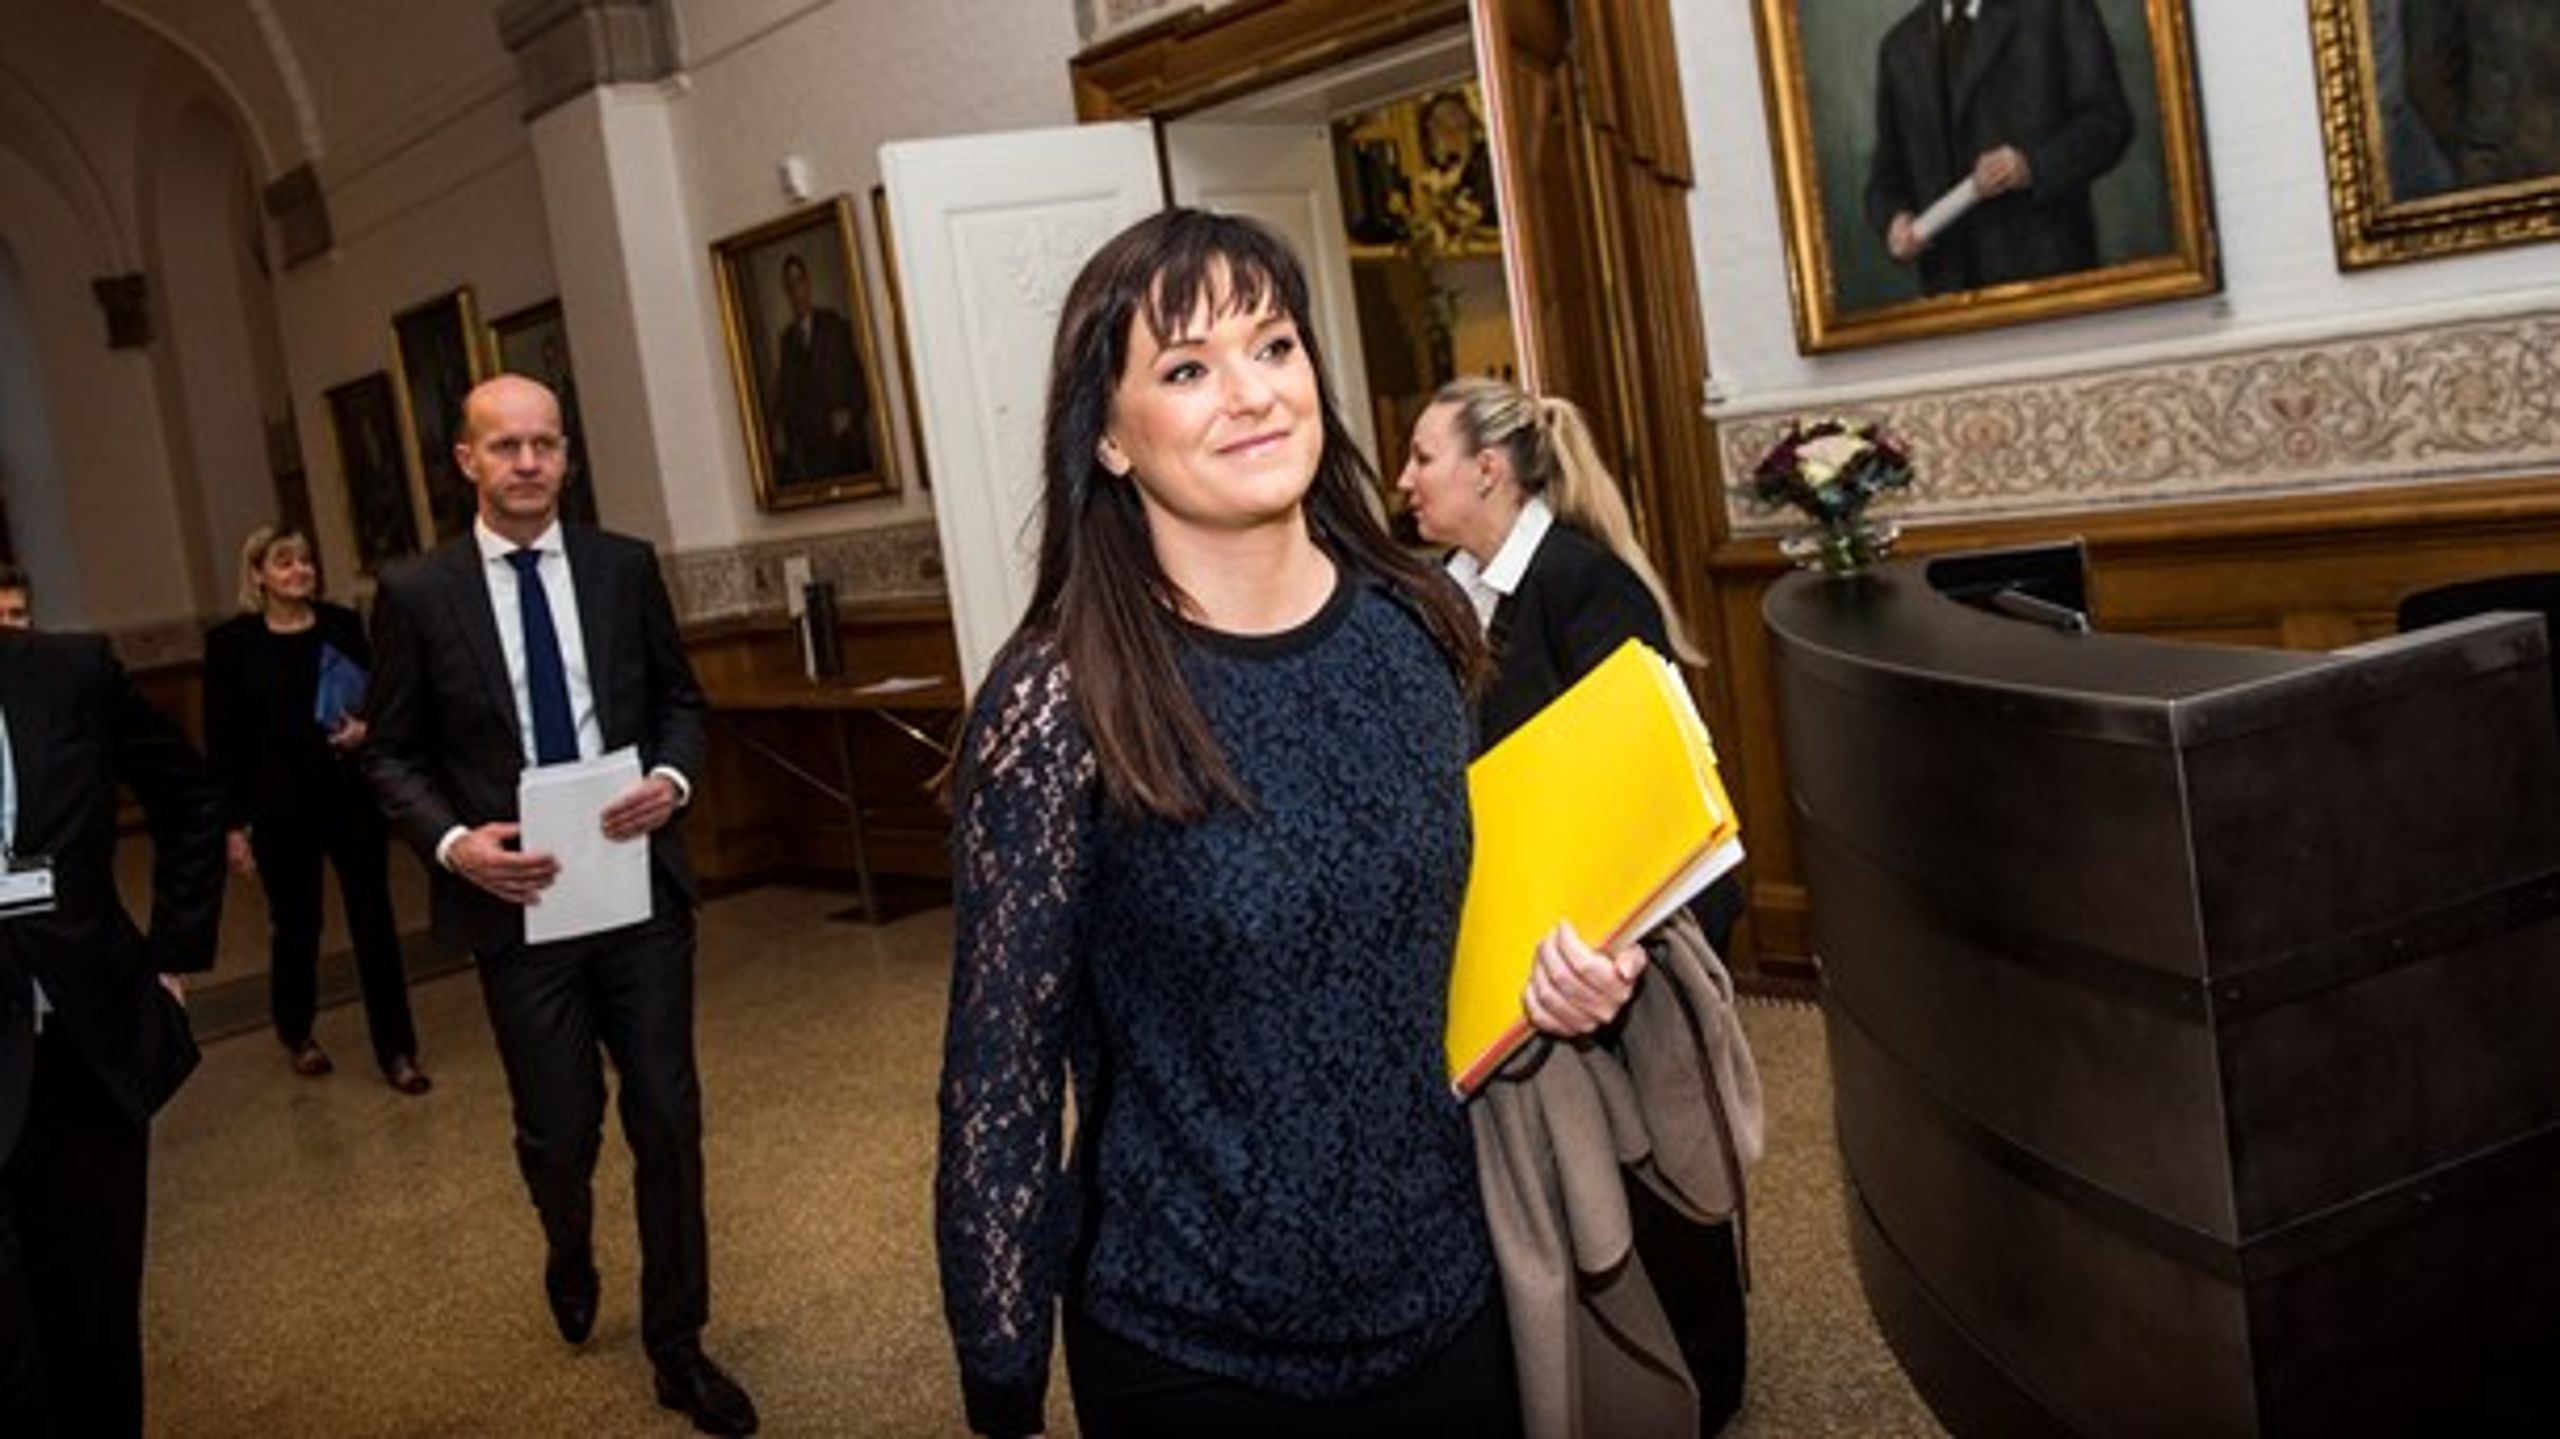 Sophie Løhde (V), minister for offentlig innovation, møder kritik fra de statsligt ansatte efter hun har udtrykt støtte til lederne. Her ses hun på vej til samråd om sagen.